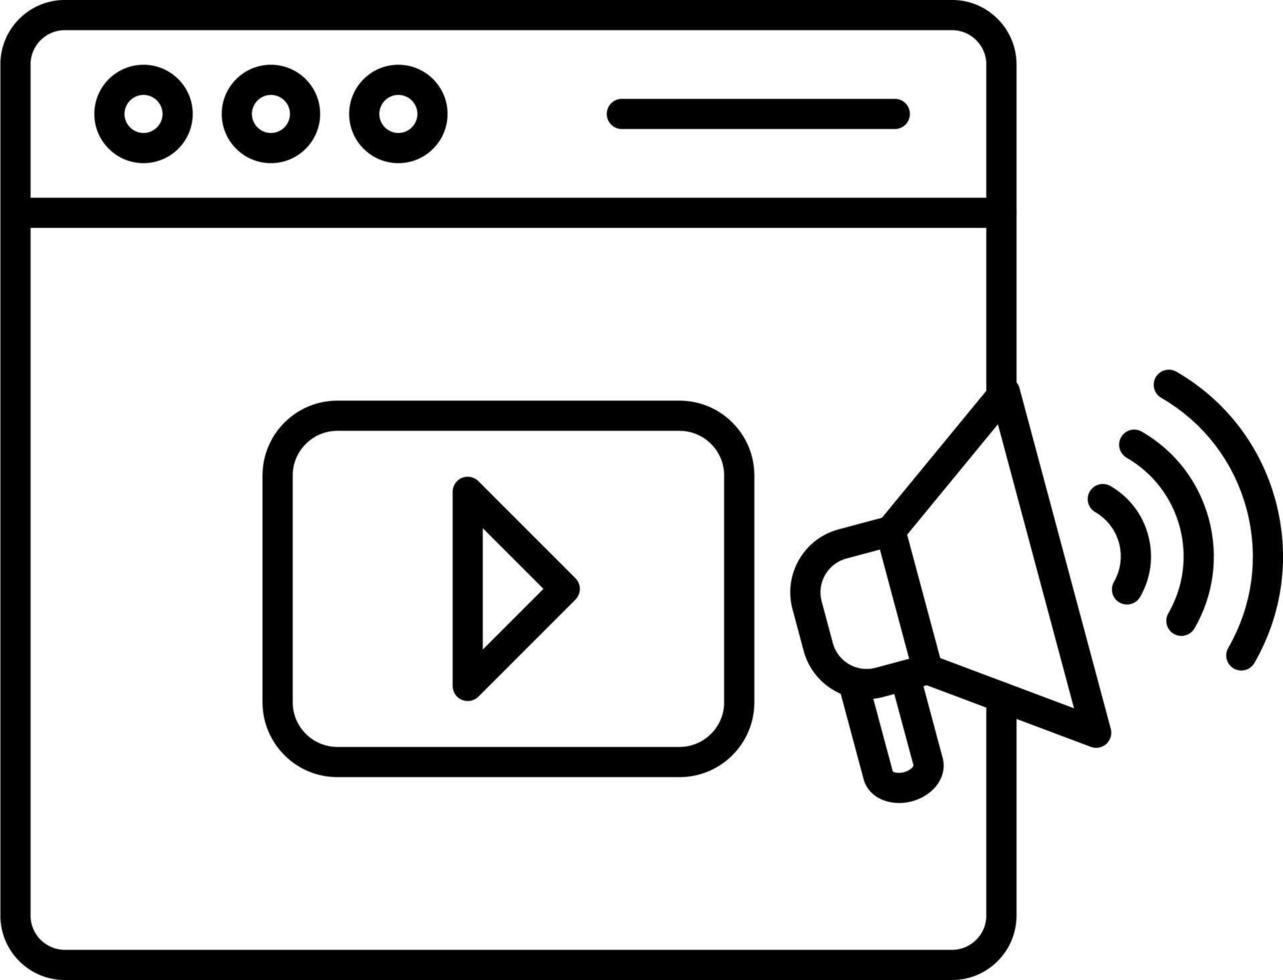 video marknadsföring vektor ikon